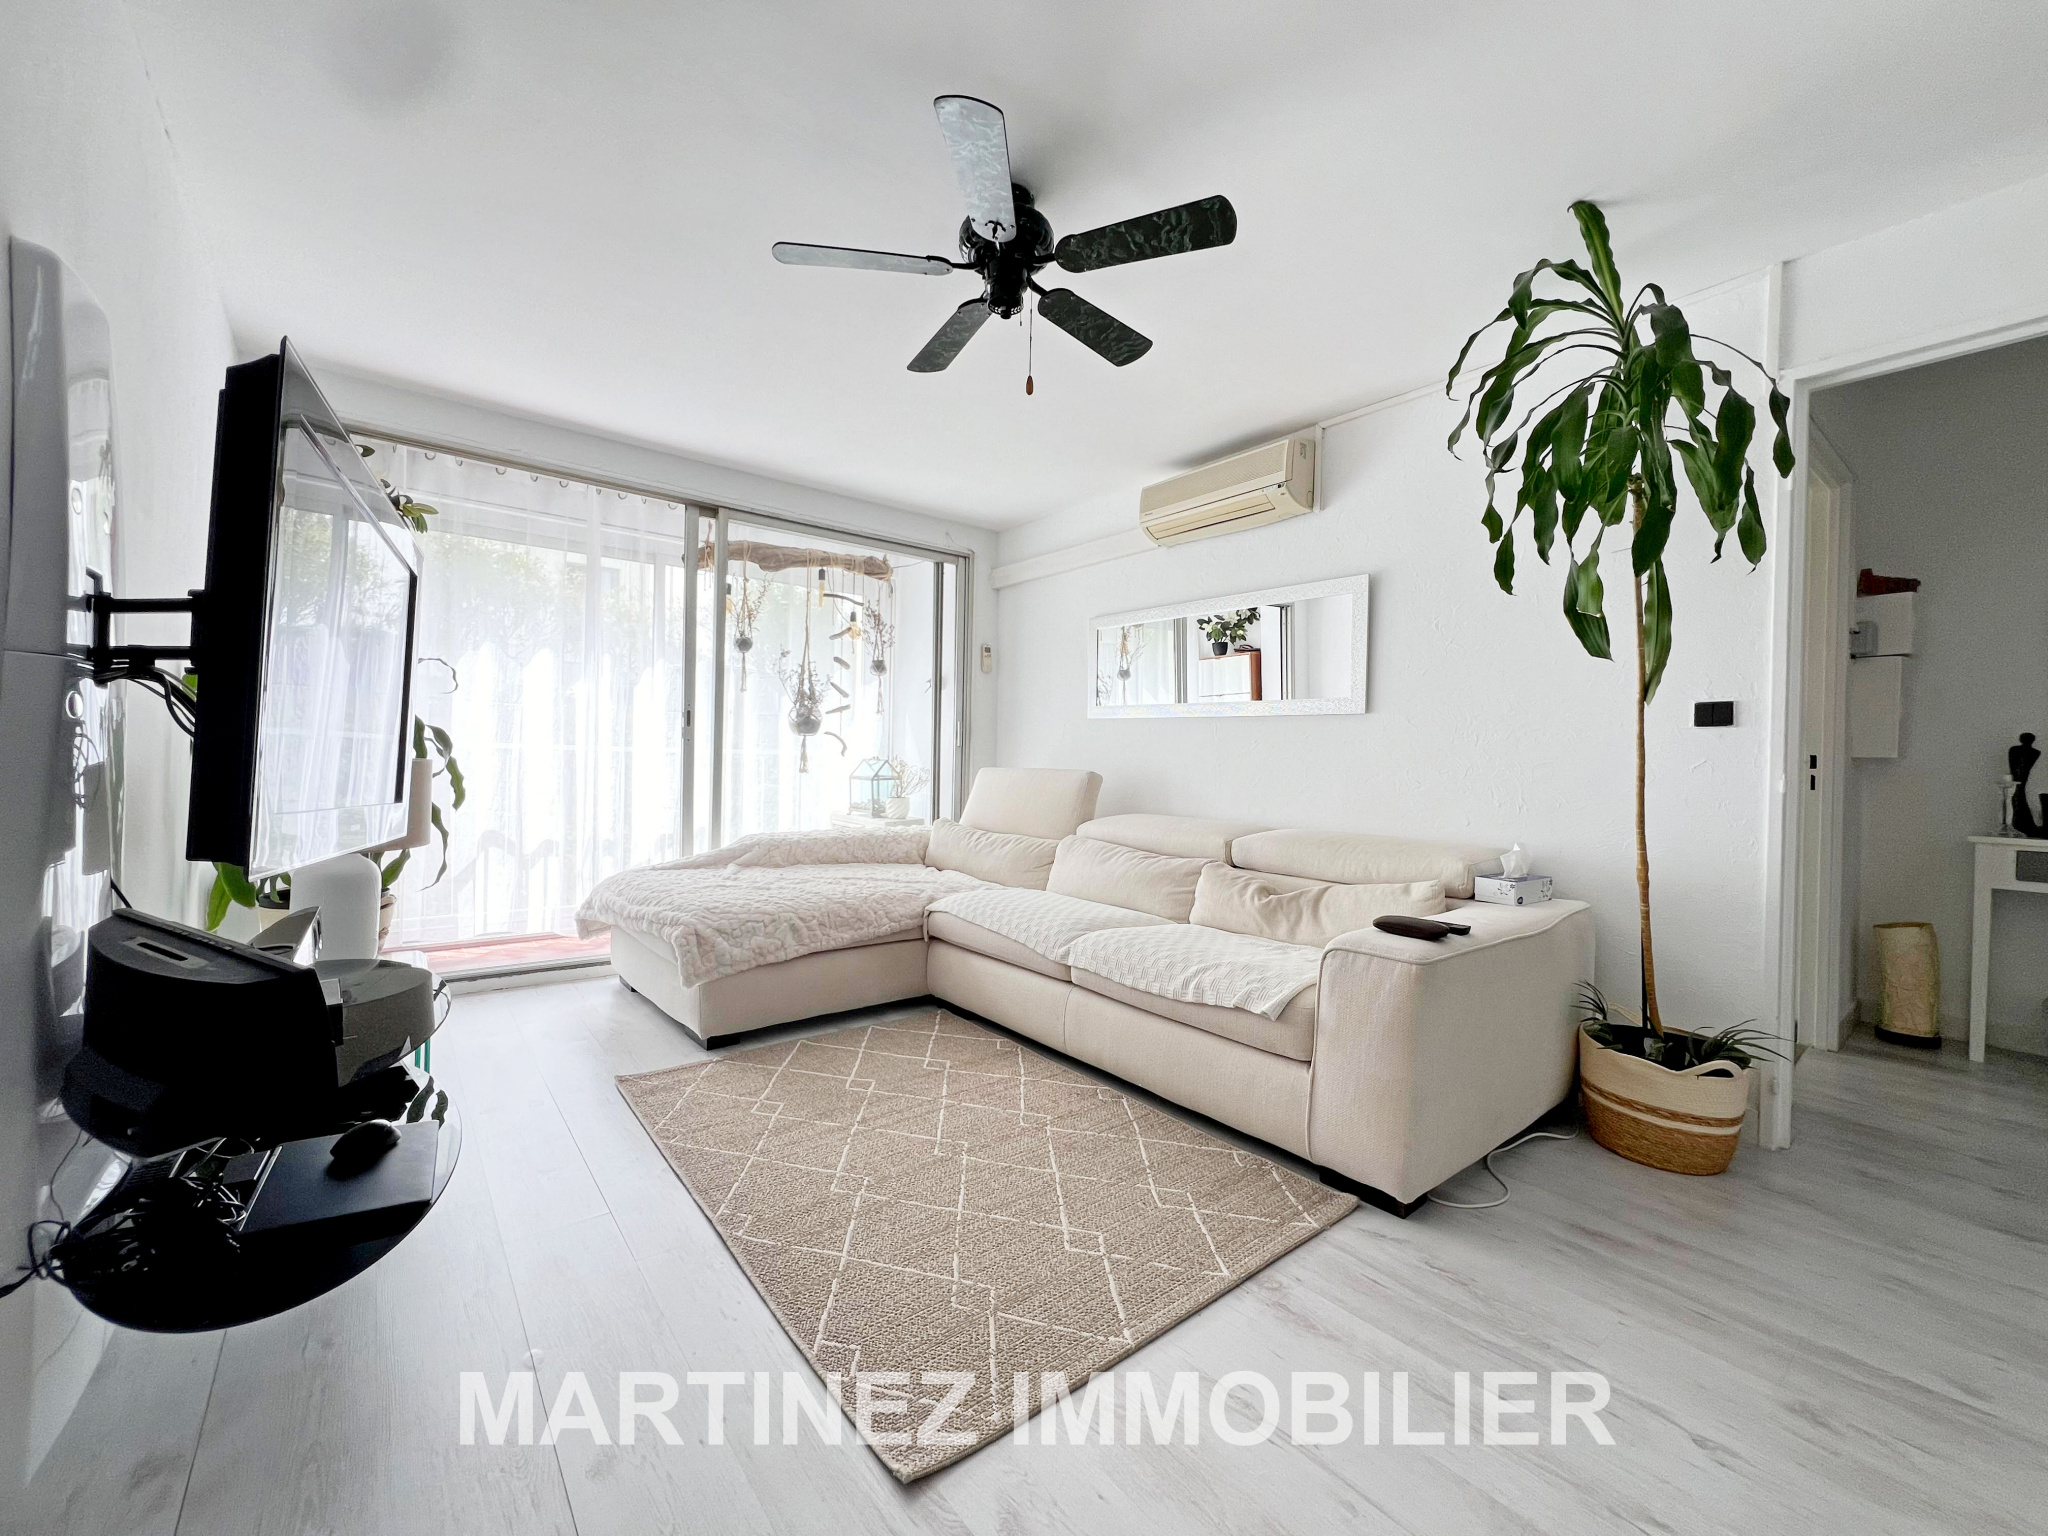 Vente Appartement 63m² 3 Pièces à Saint-Laurent-du-Var (06700) - Martinez Immobilier